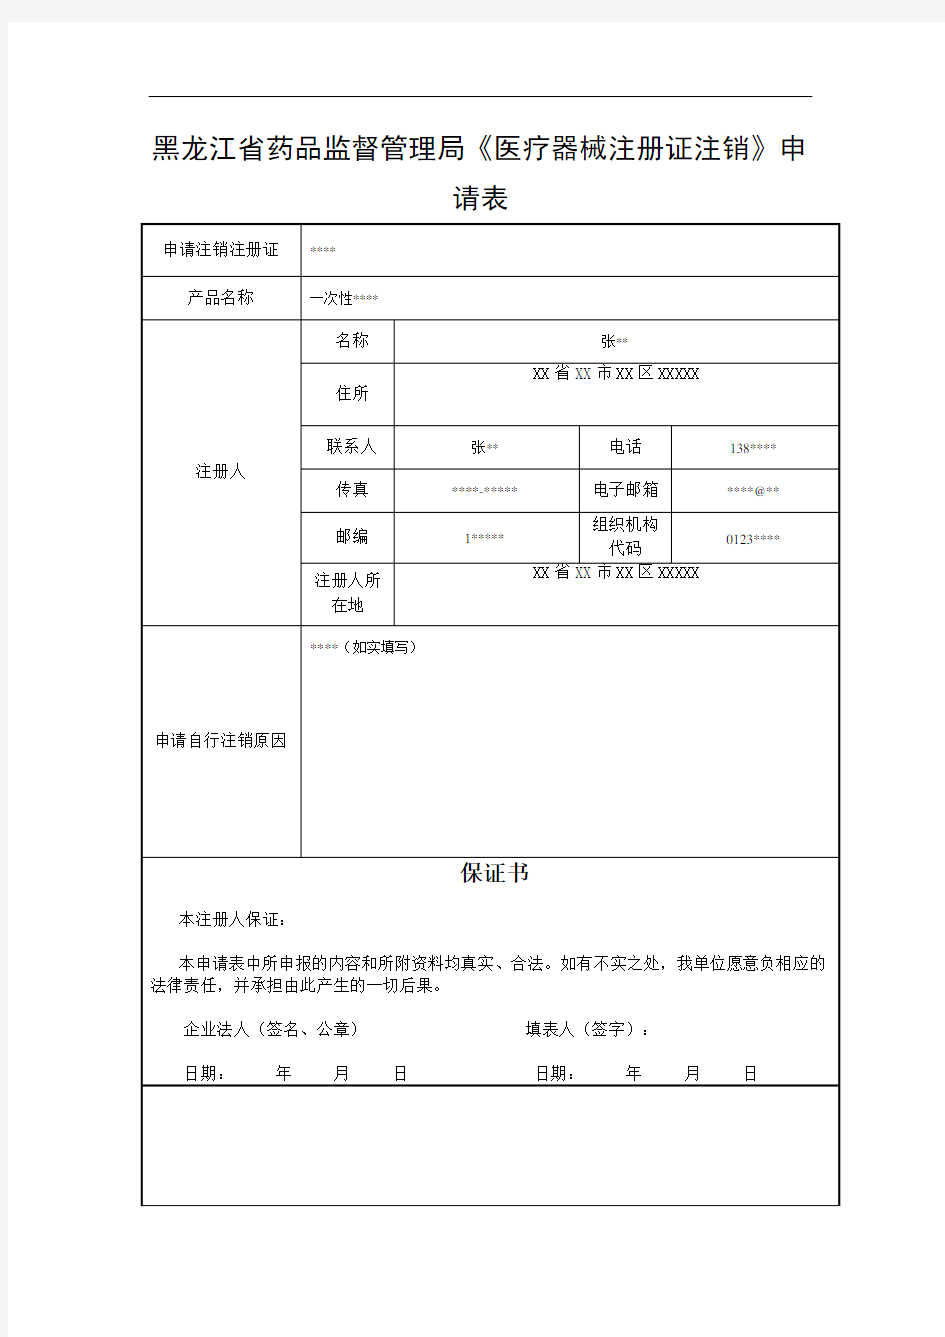 黑龙江省药品监督管理局《医疗器械注册证注销》申请表(有样本)(1)